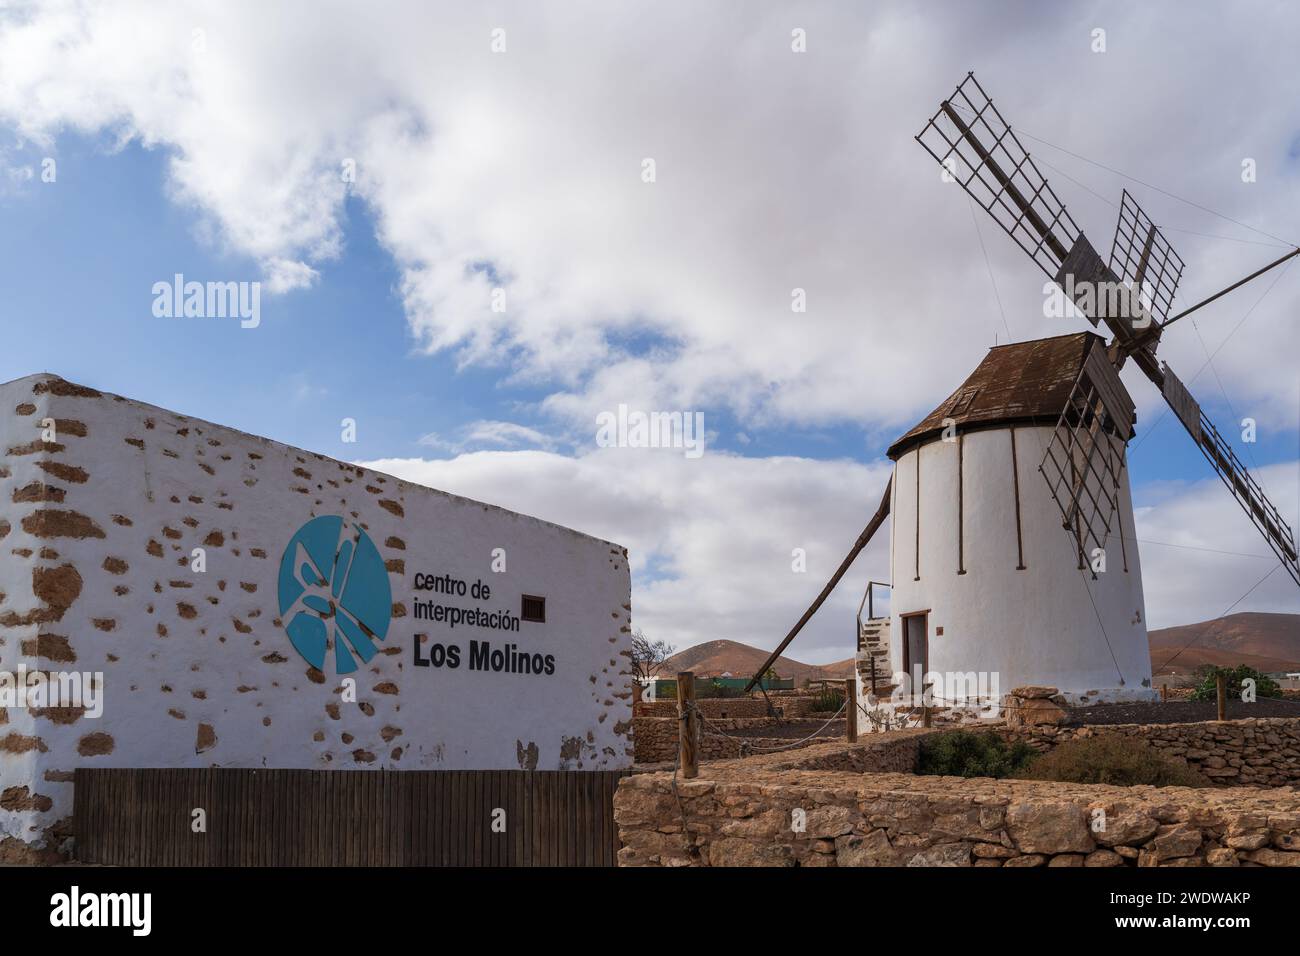 Eine traditionelle weiße Windmühle und ein Schild für das Windmill Interpretation Center 'Los Molinos' in Tiscamanita, Fuerteventura, Spanien. Stockfoto